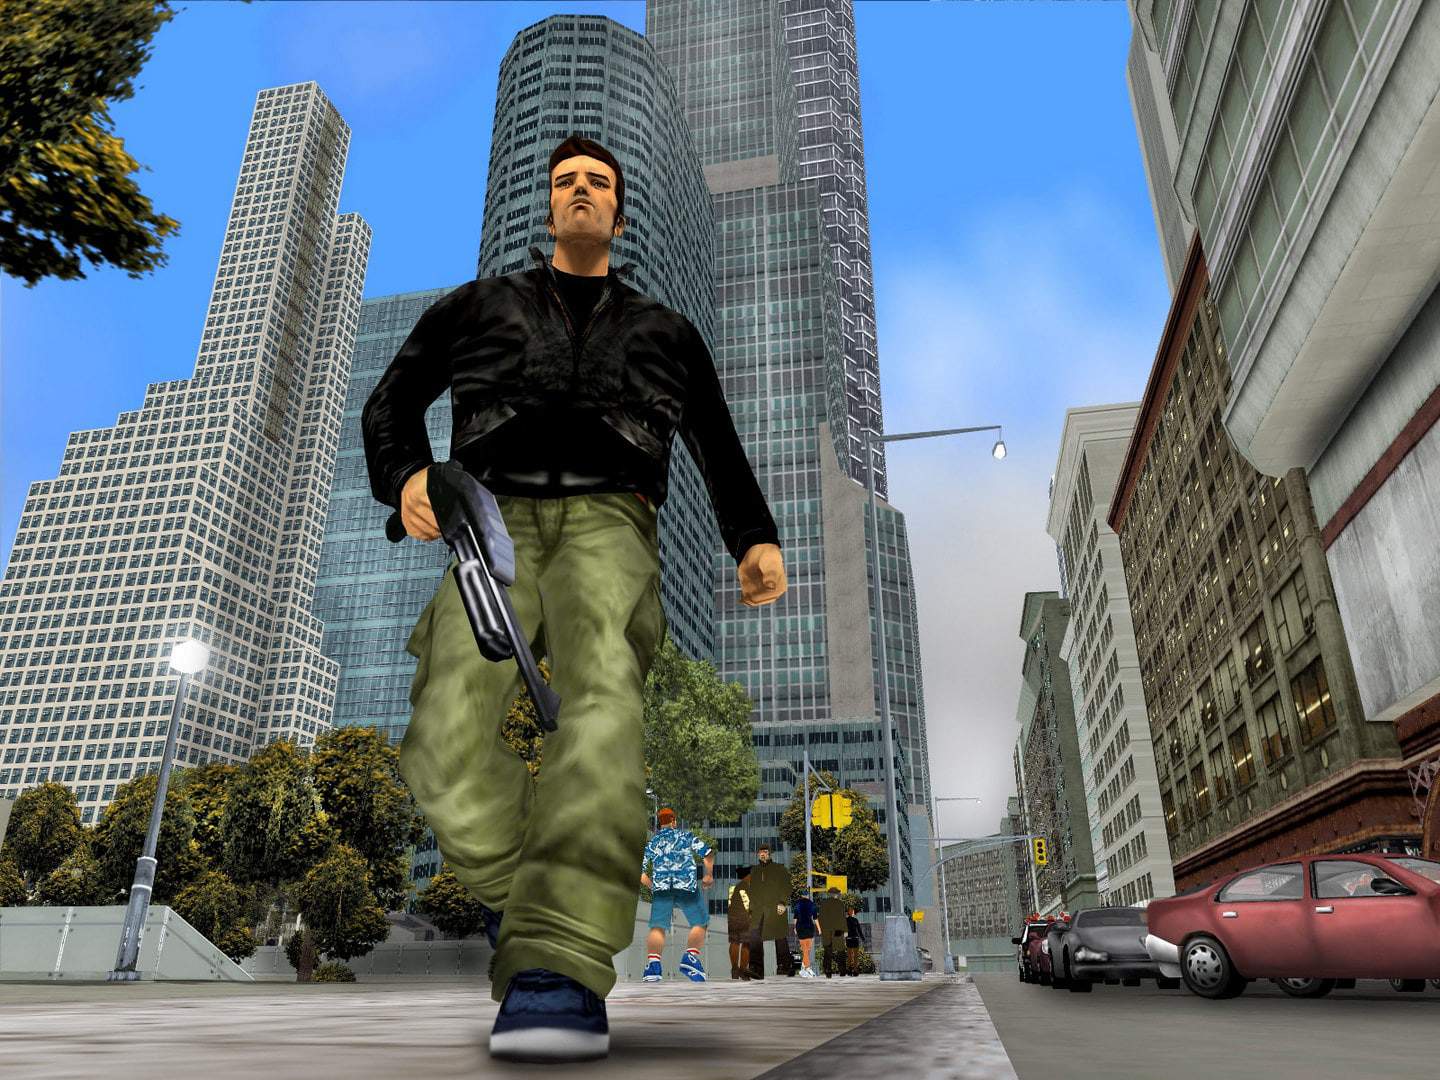 Trilogia GTA da geração PS2 deve ganhar remasterização - Olhar Digital